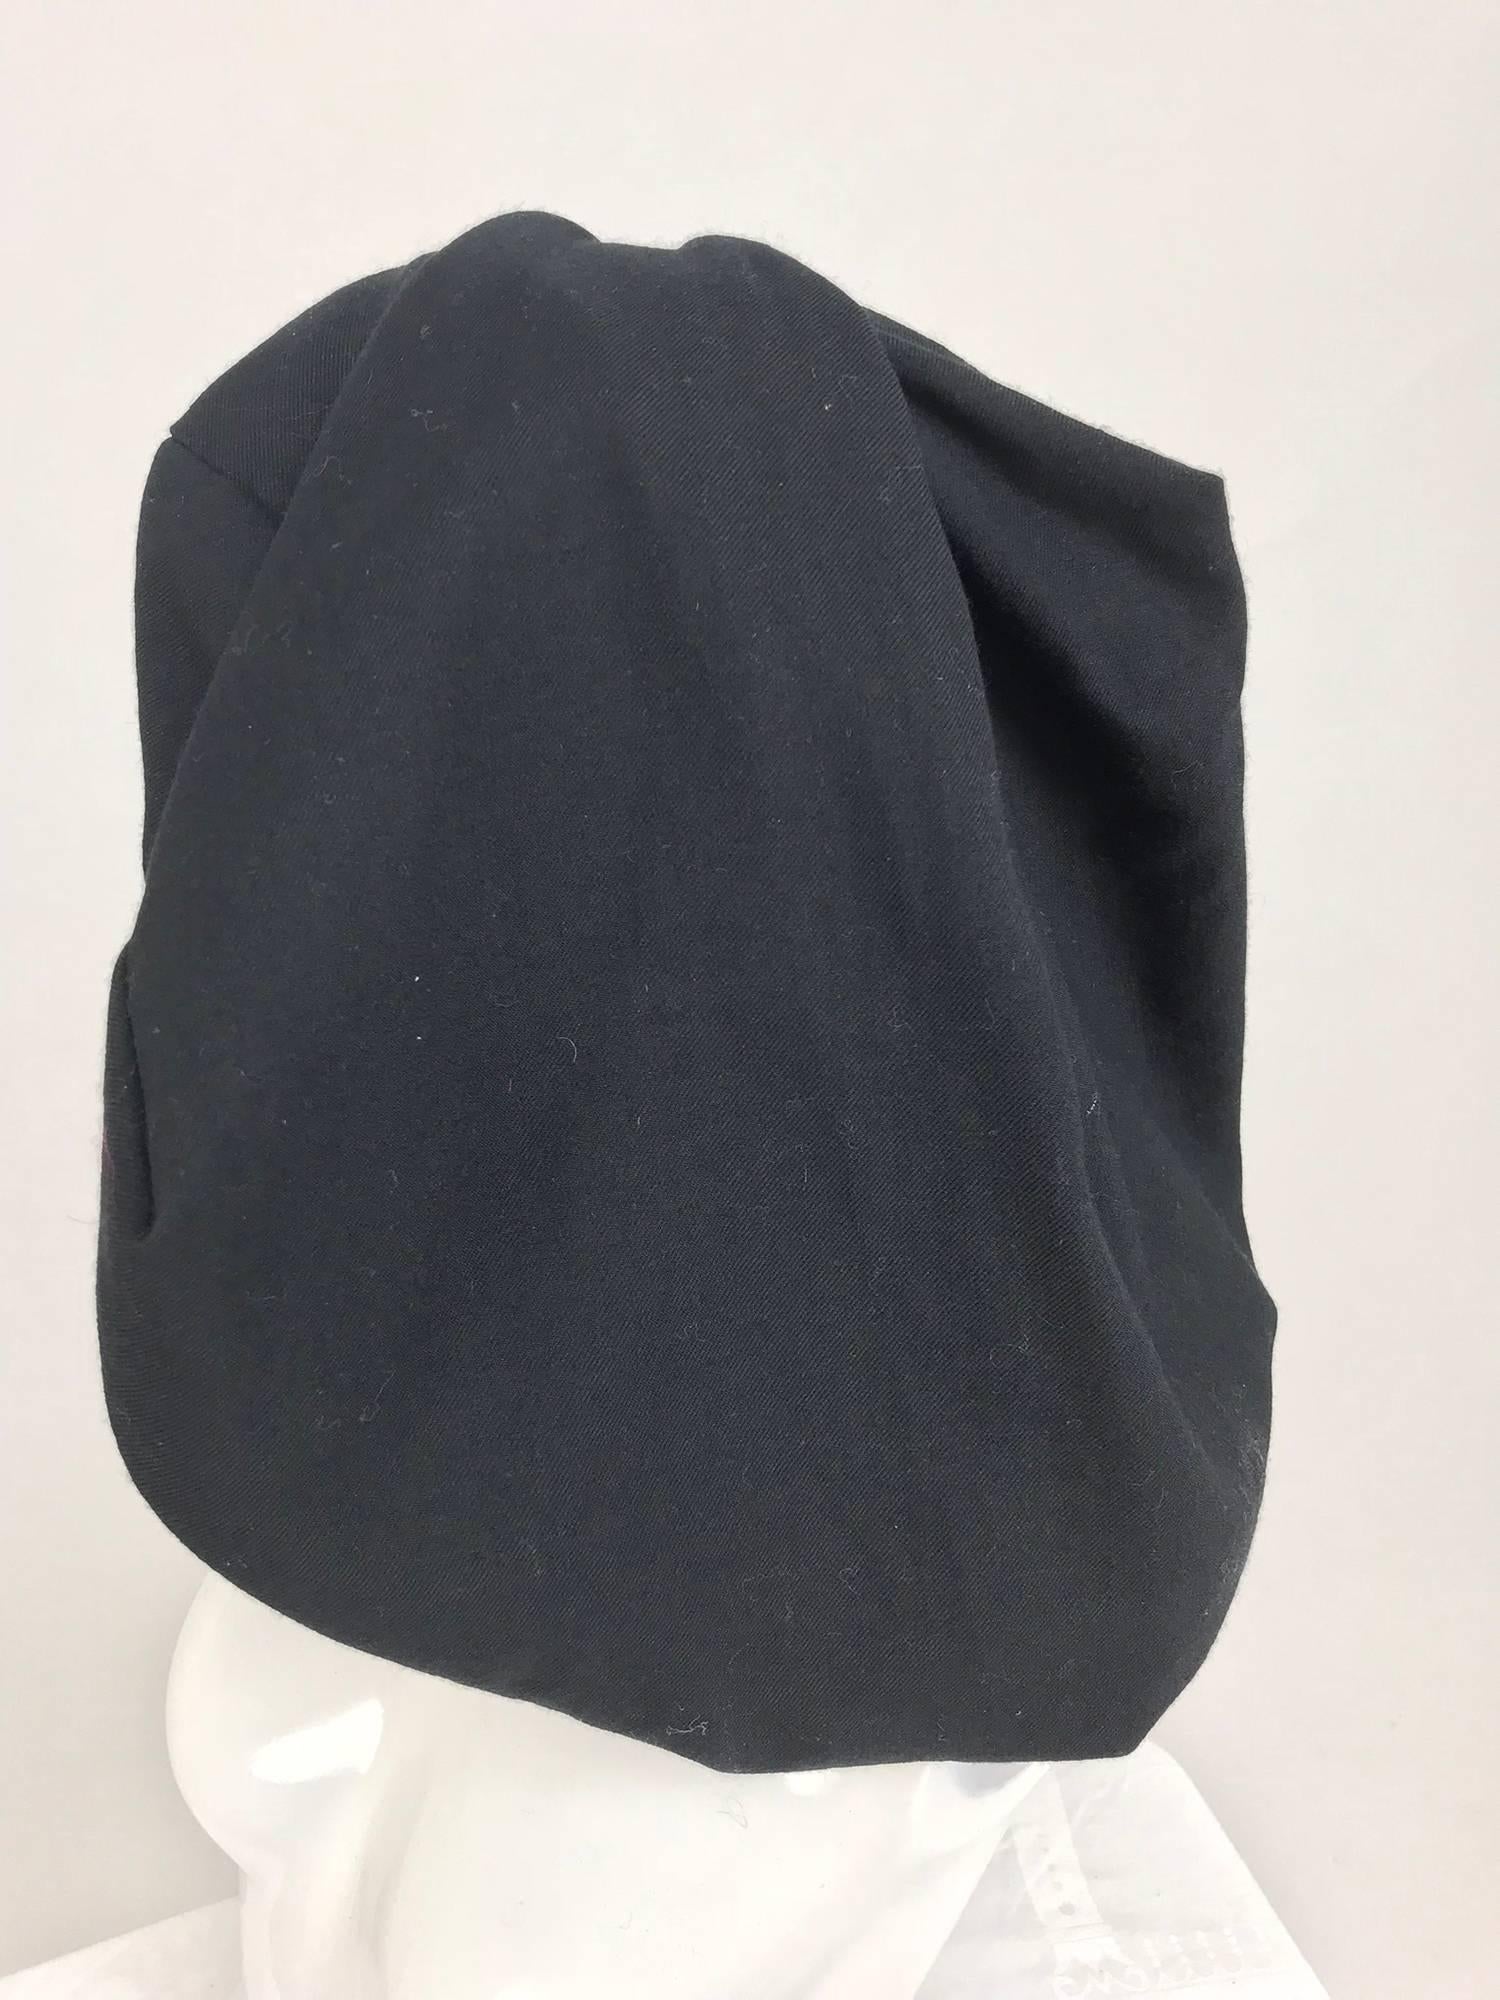 Black Comme des Garcons black wool asymmetrical hat